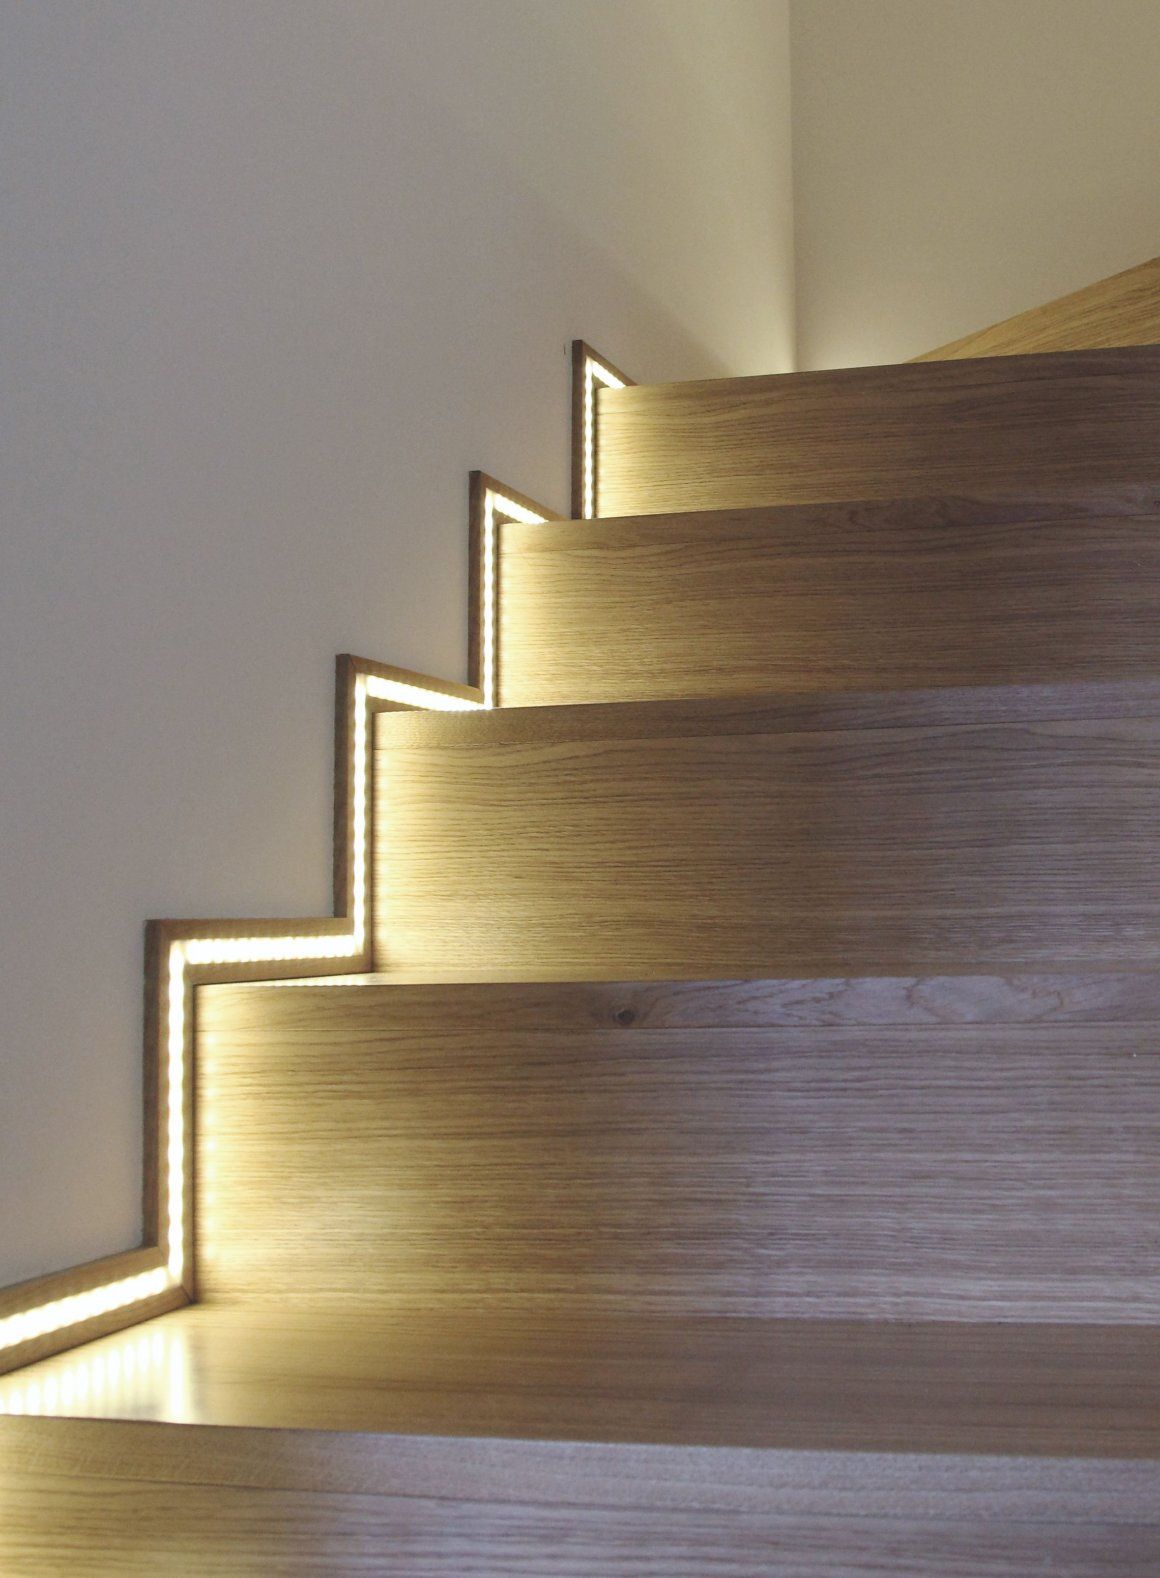 طراحی پله مدرن بهمراه نورپردازی